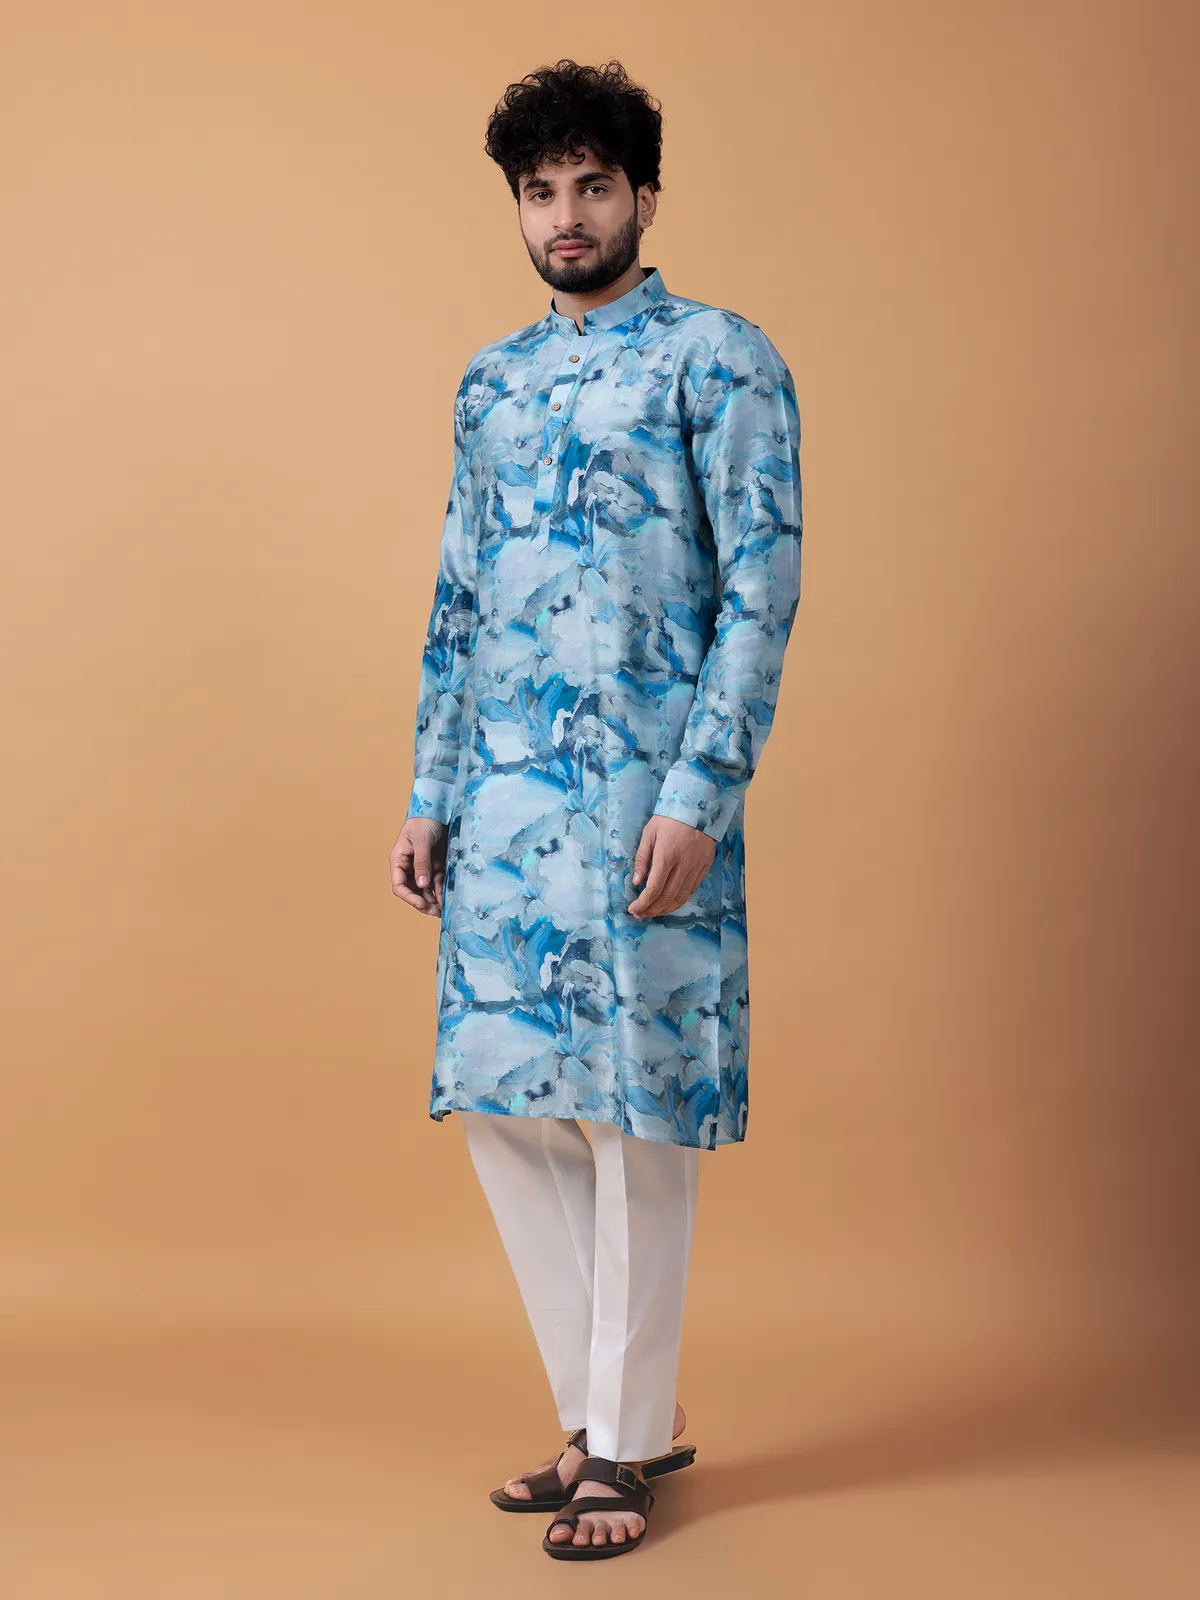 Stunning printed sky blue cotton  Men Kurta pajama